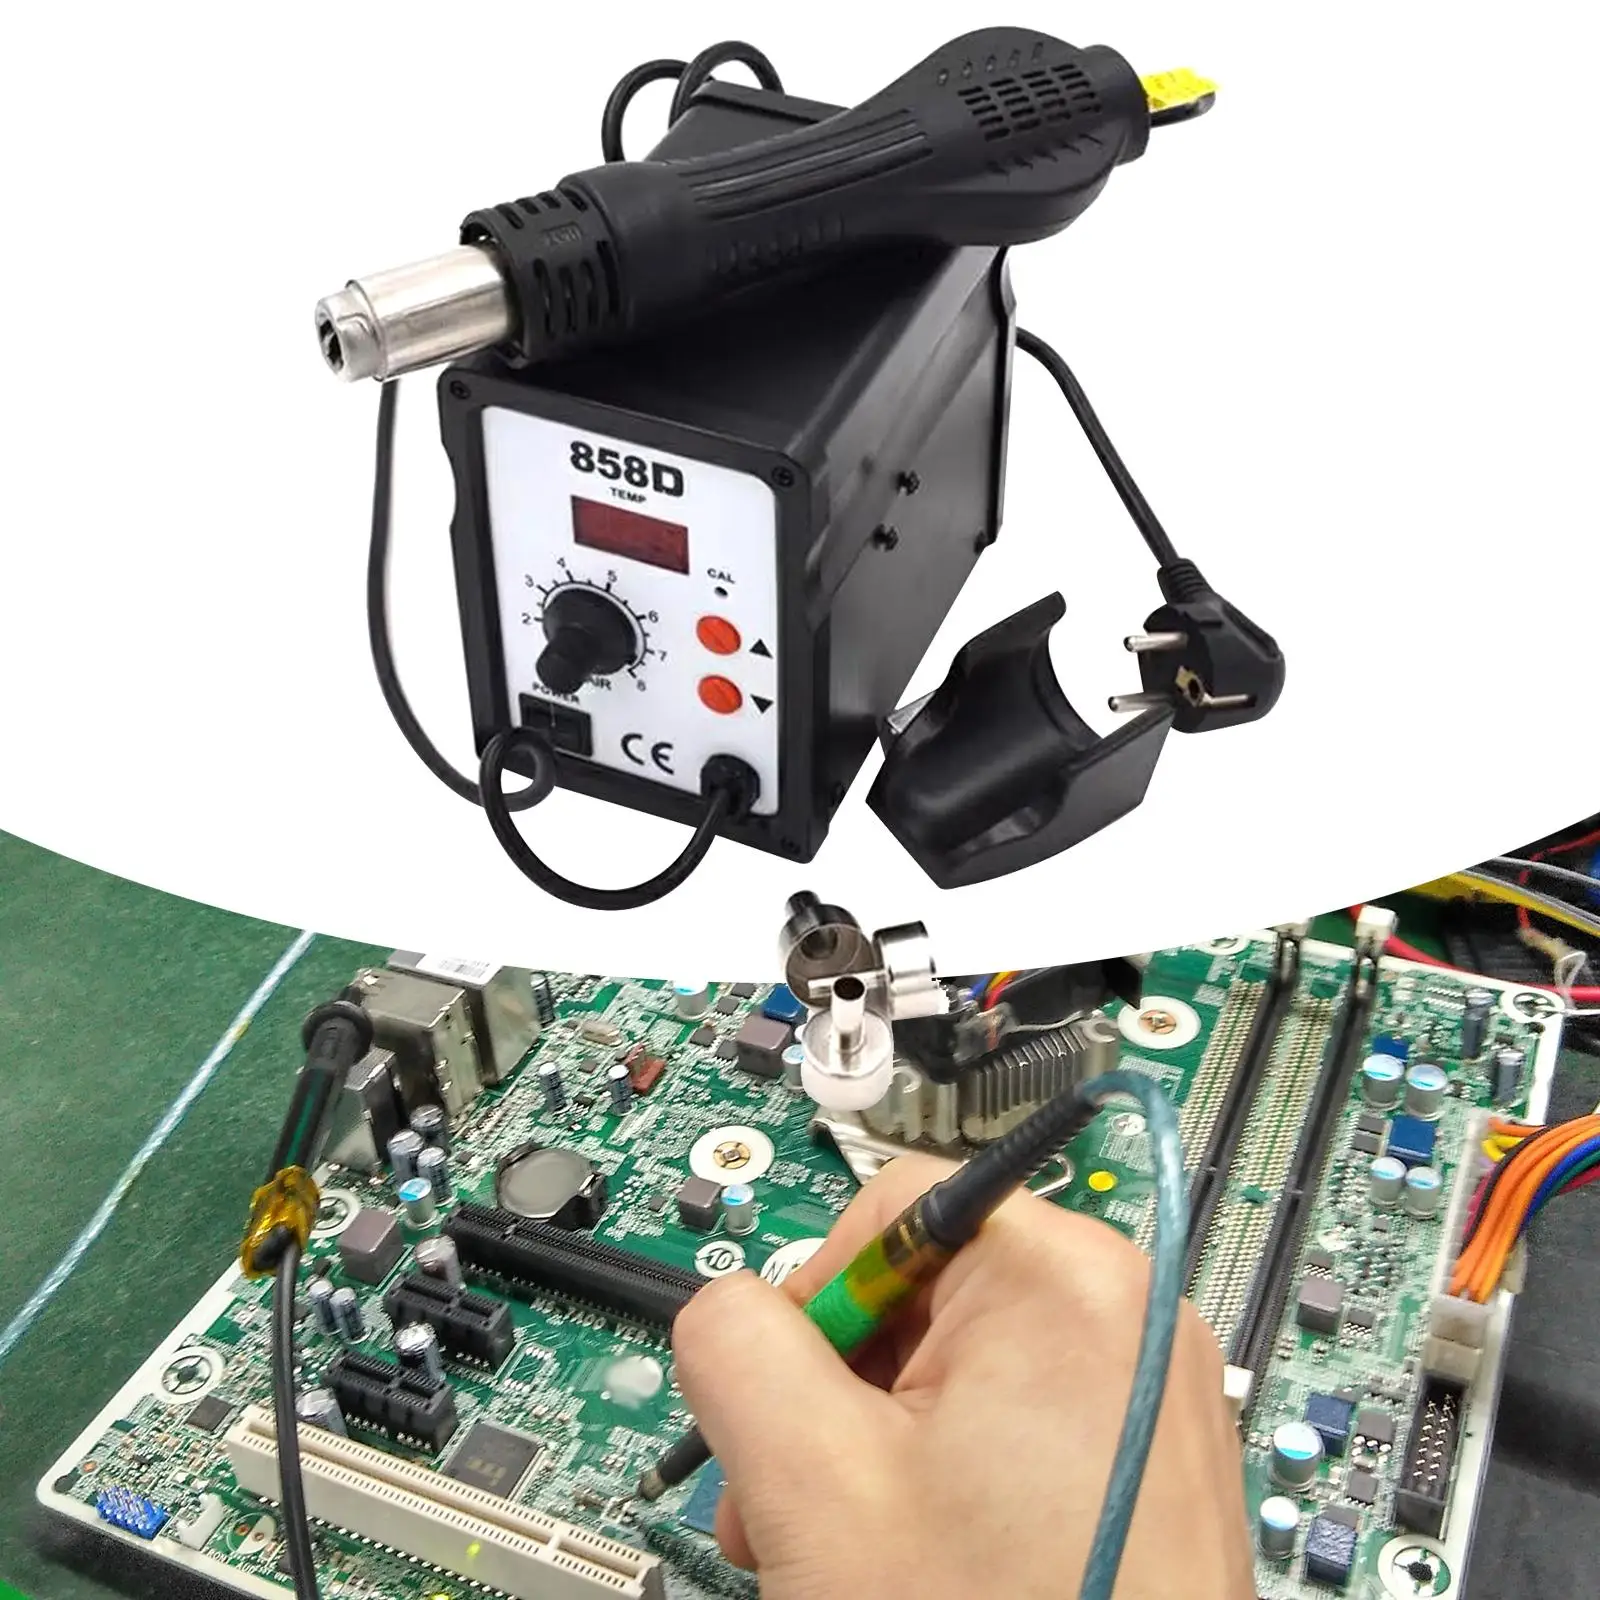 Hot Air Reflow Adjustable Soldering Replacing Nozzle Fast Heating Adjustable 858D Hot Air Reworks Station for Repairing Phone